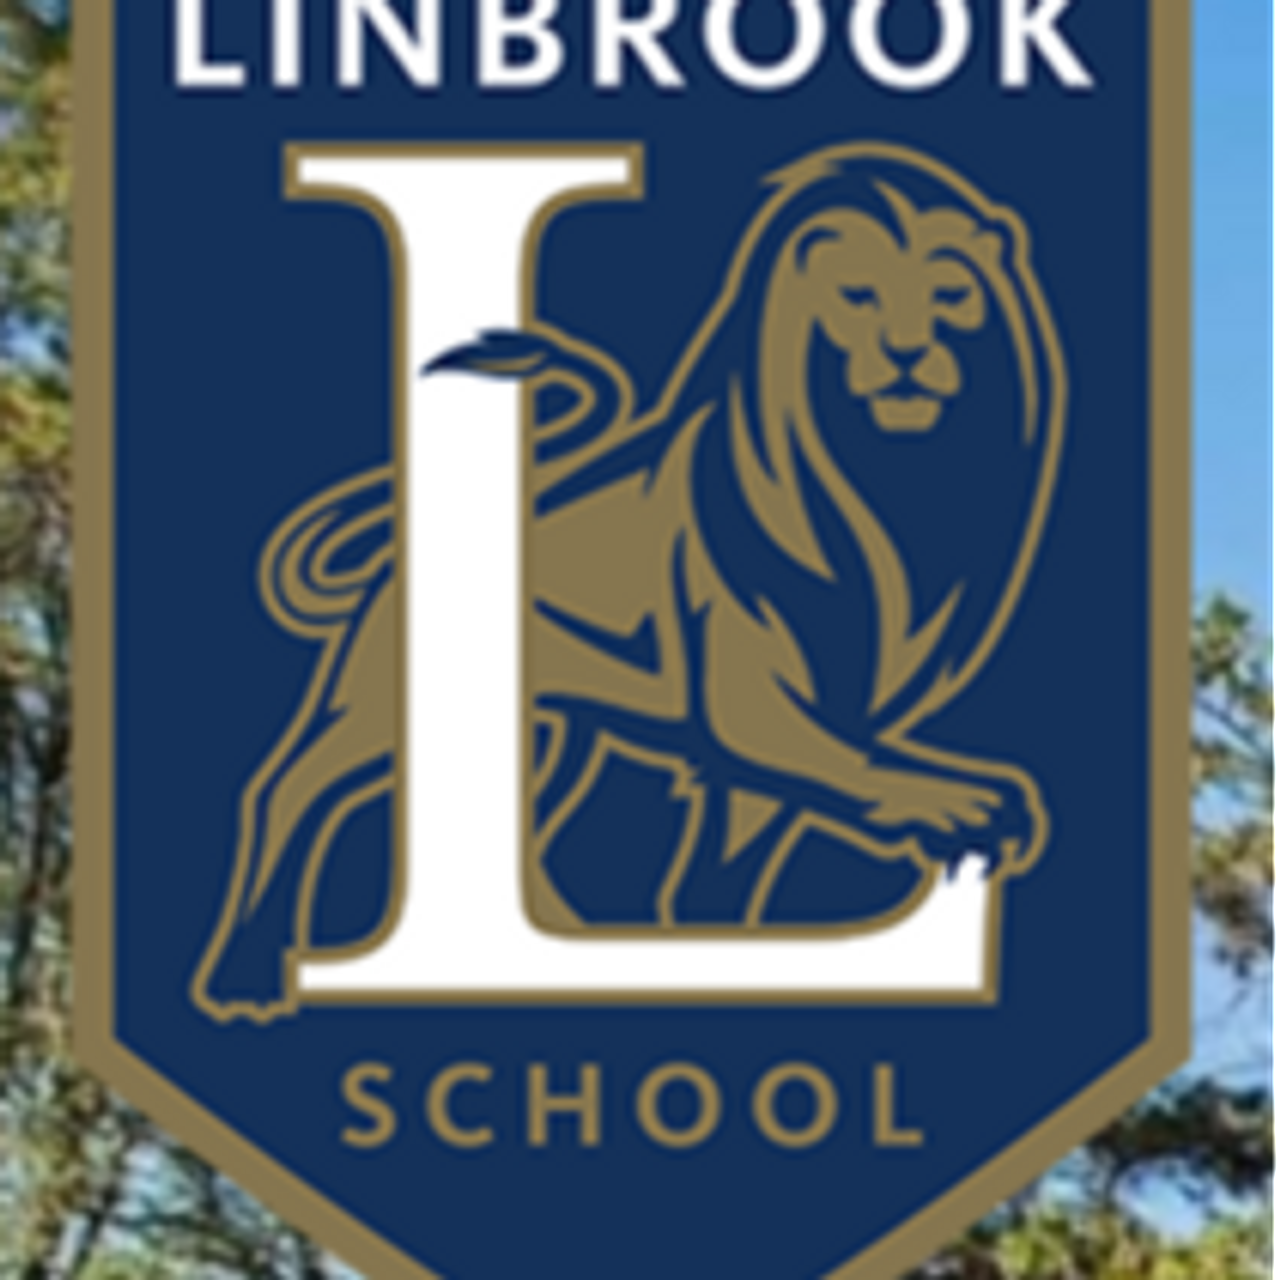 LinbrookSchool7